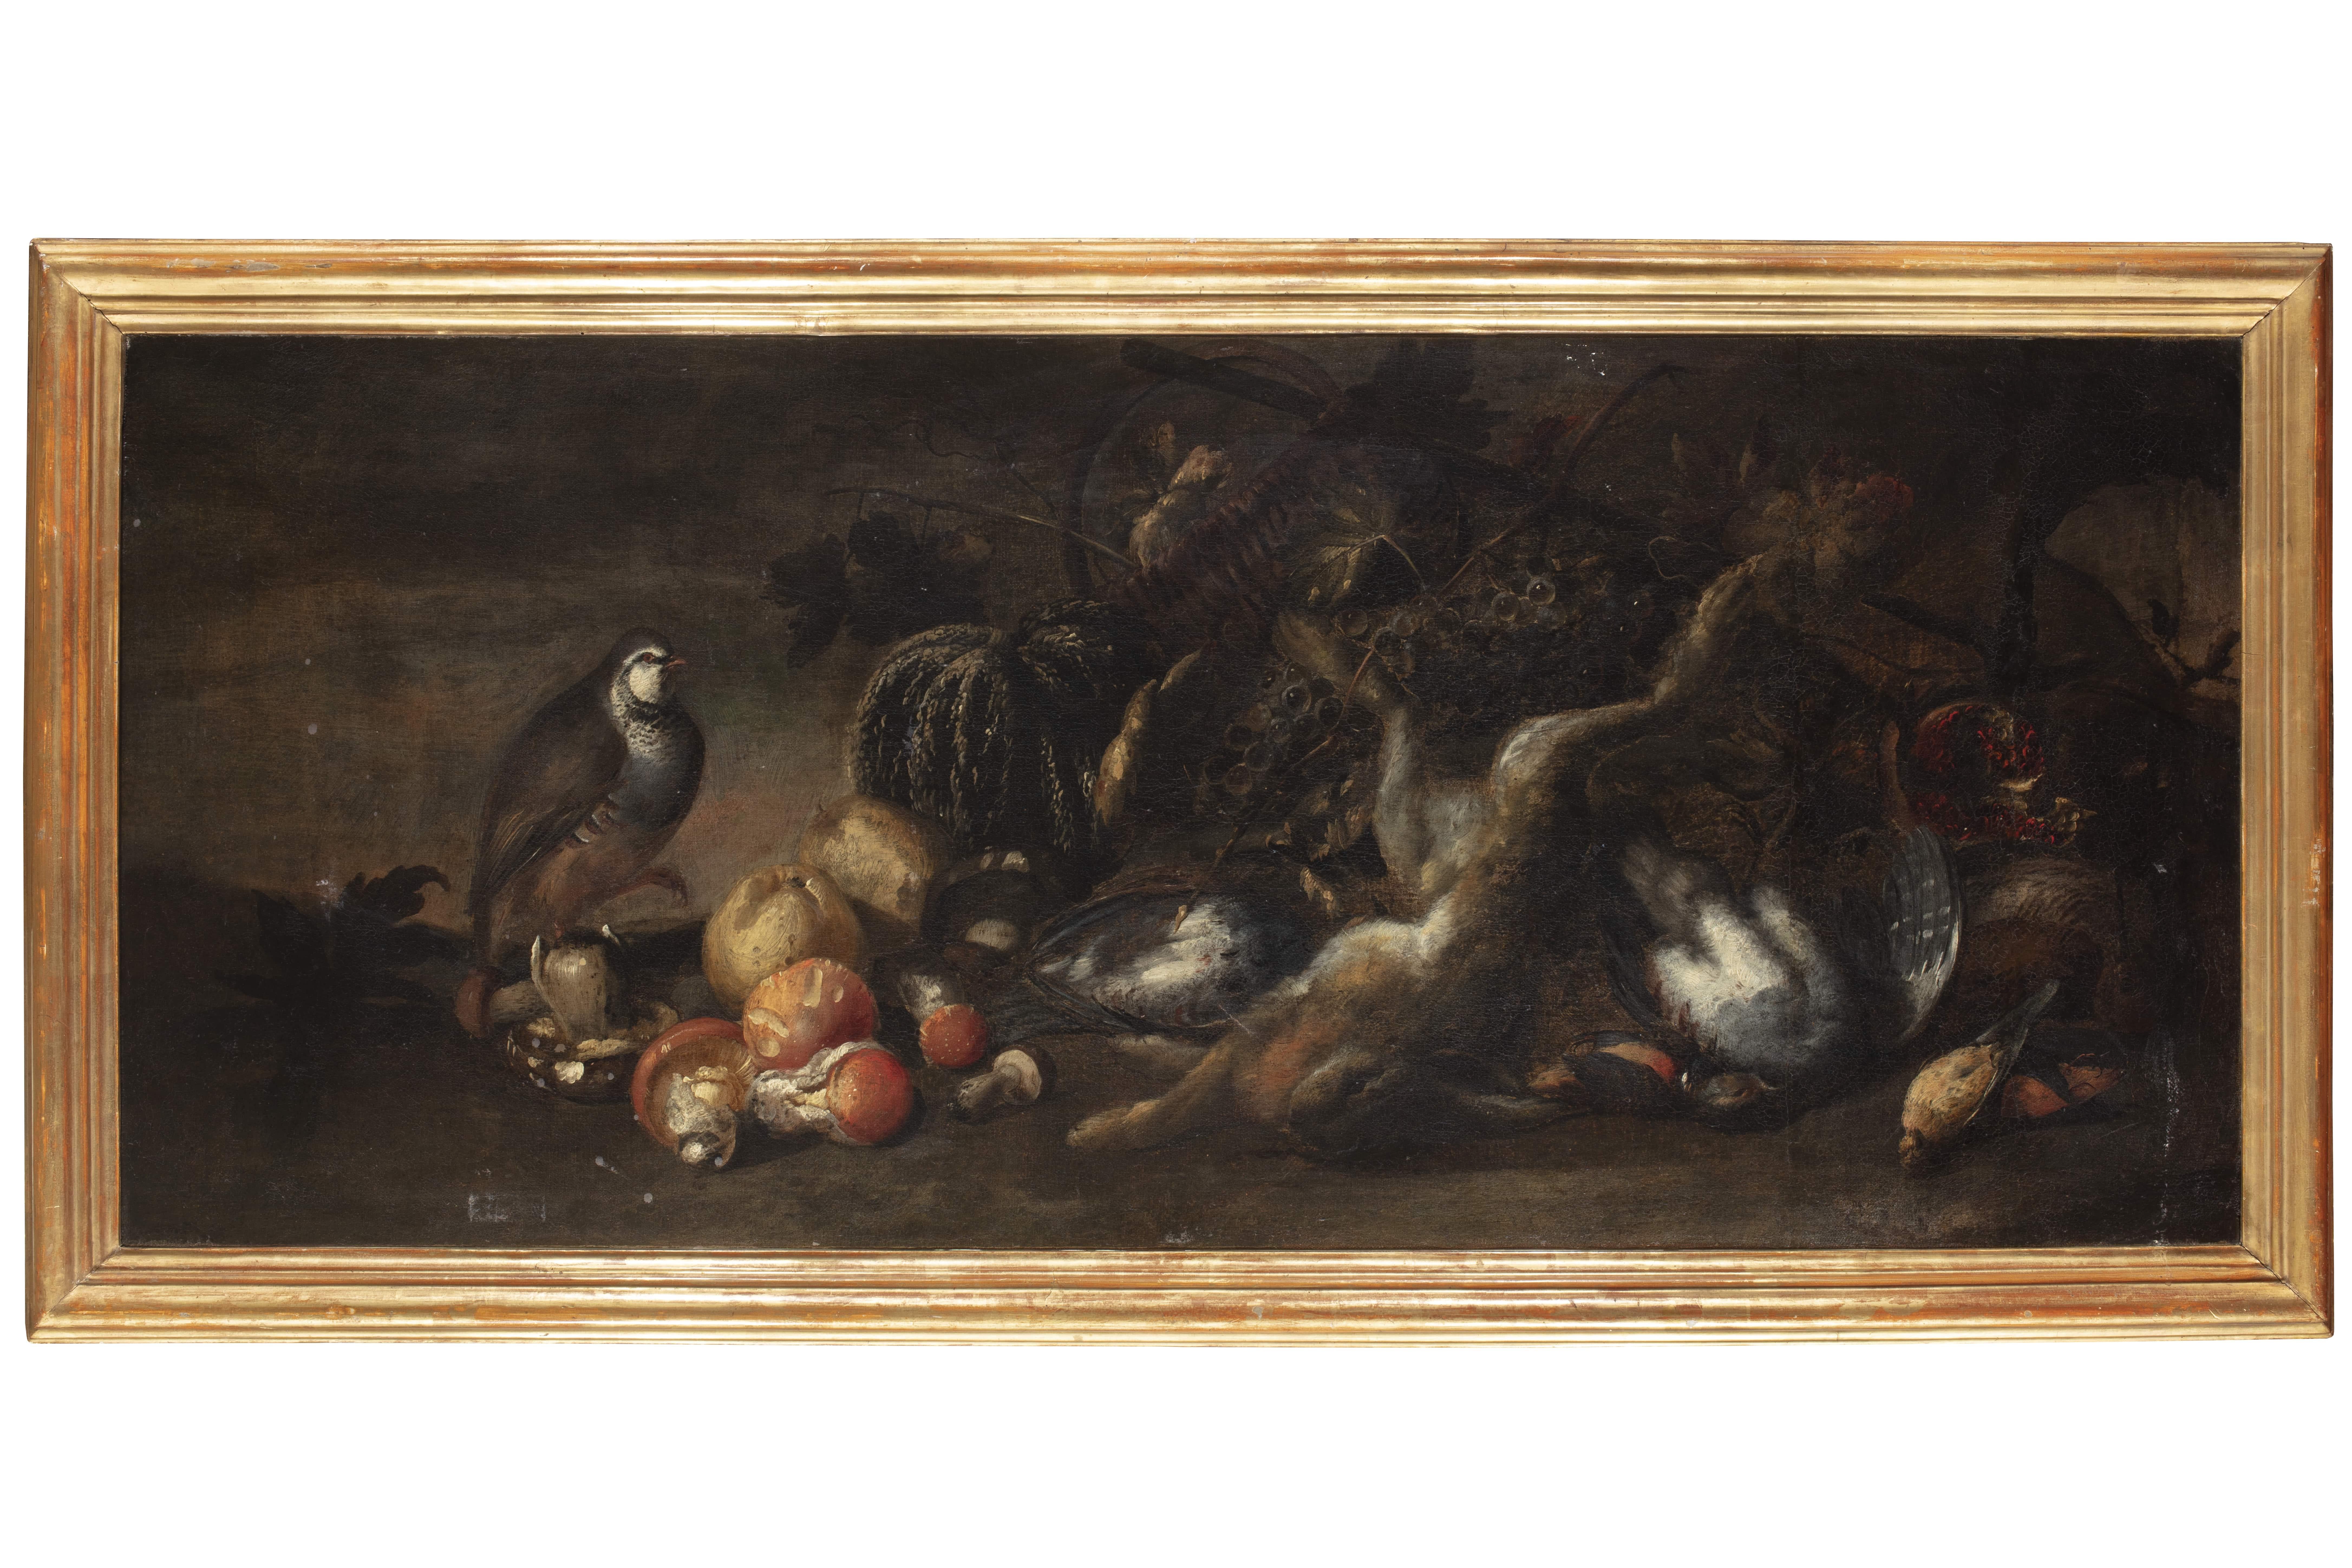 Fin du XVIIe siècle Par Nature morte Peintre italien Nature morte Huile sur toile